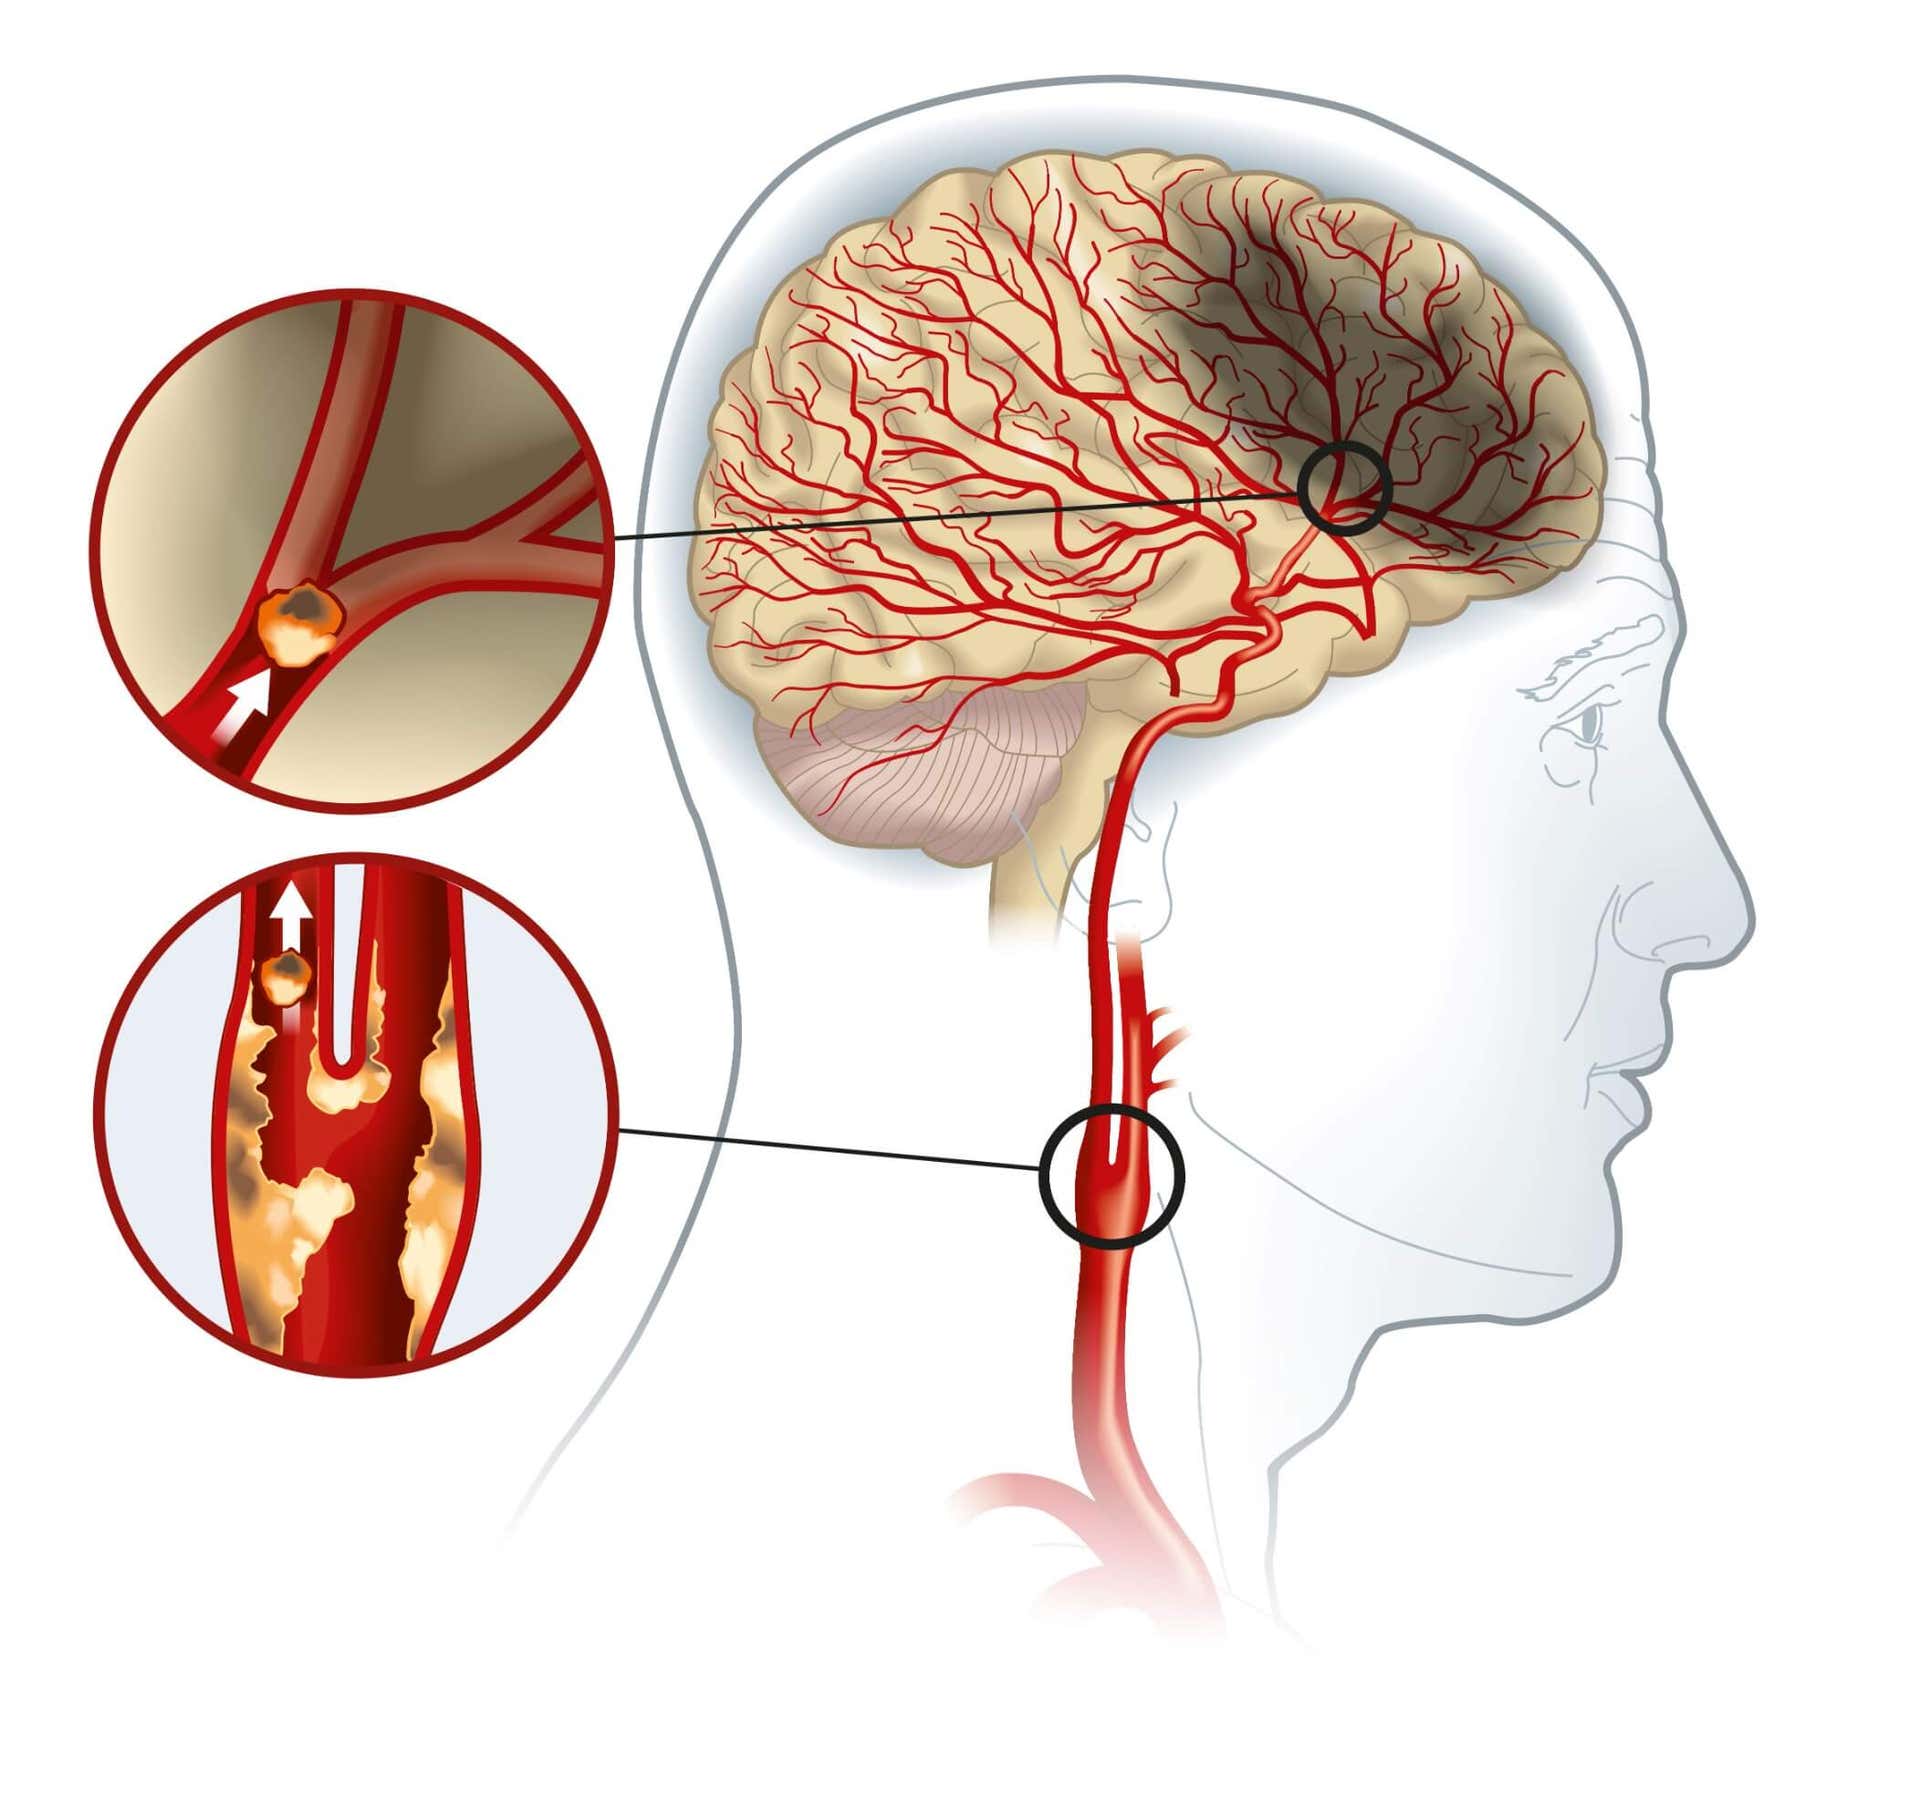 Maladie de l'artère carotide : causes et traitements possibles